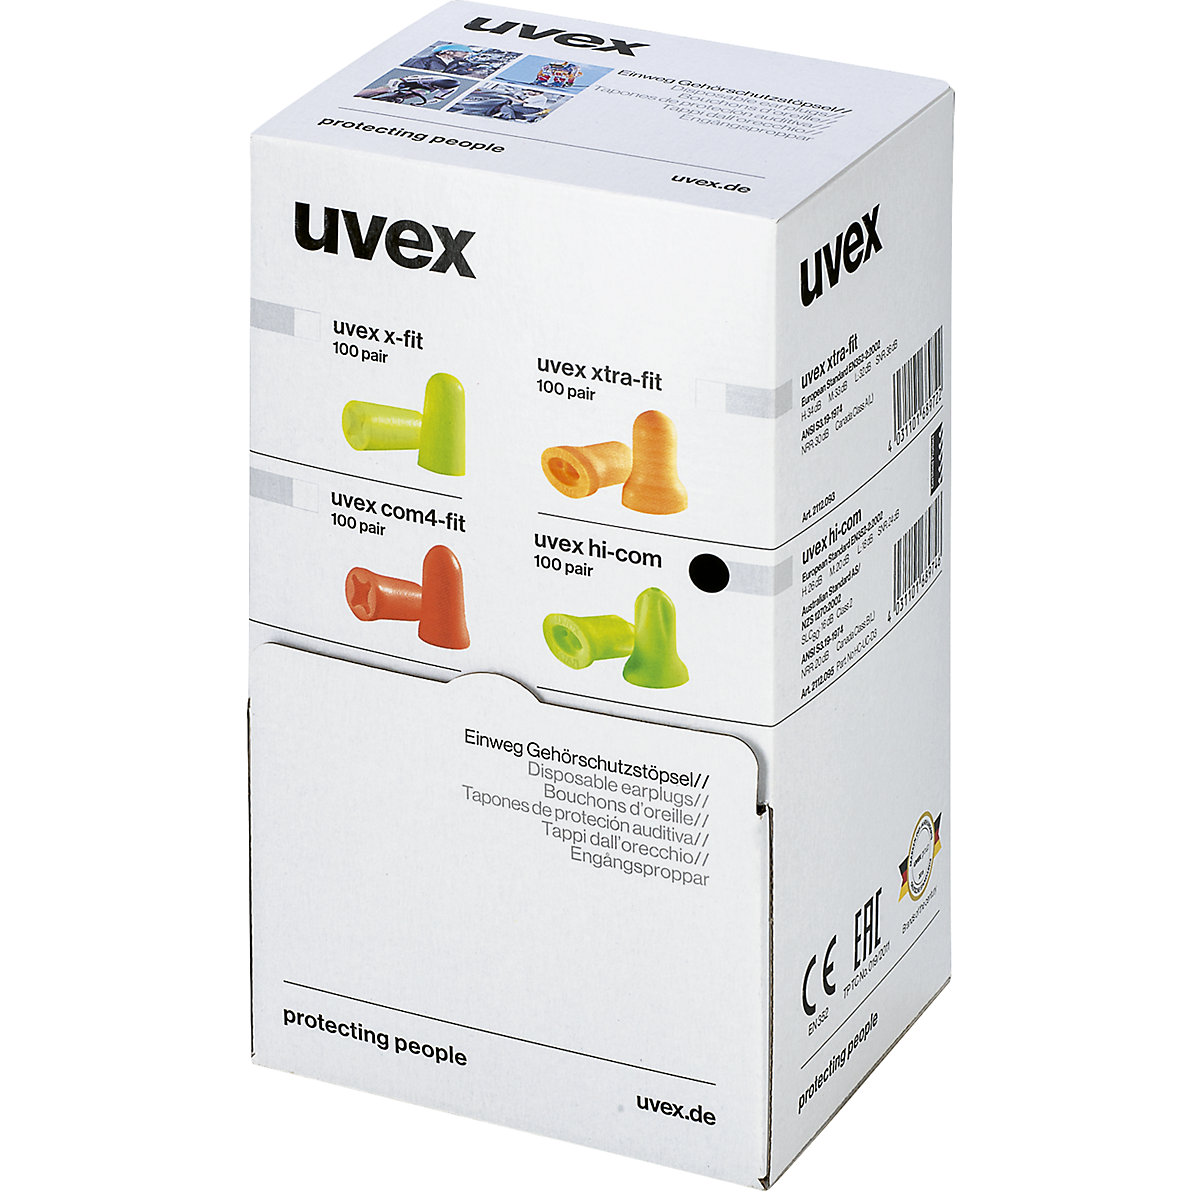 Wkładki przeciwhałasowe hi-com - Uvex